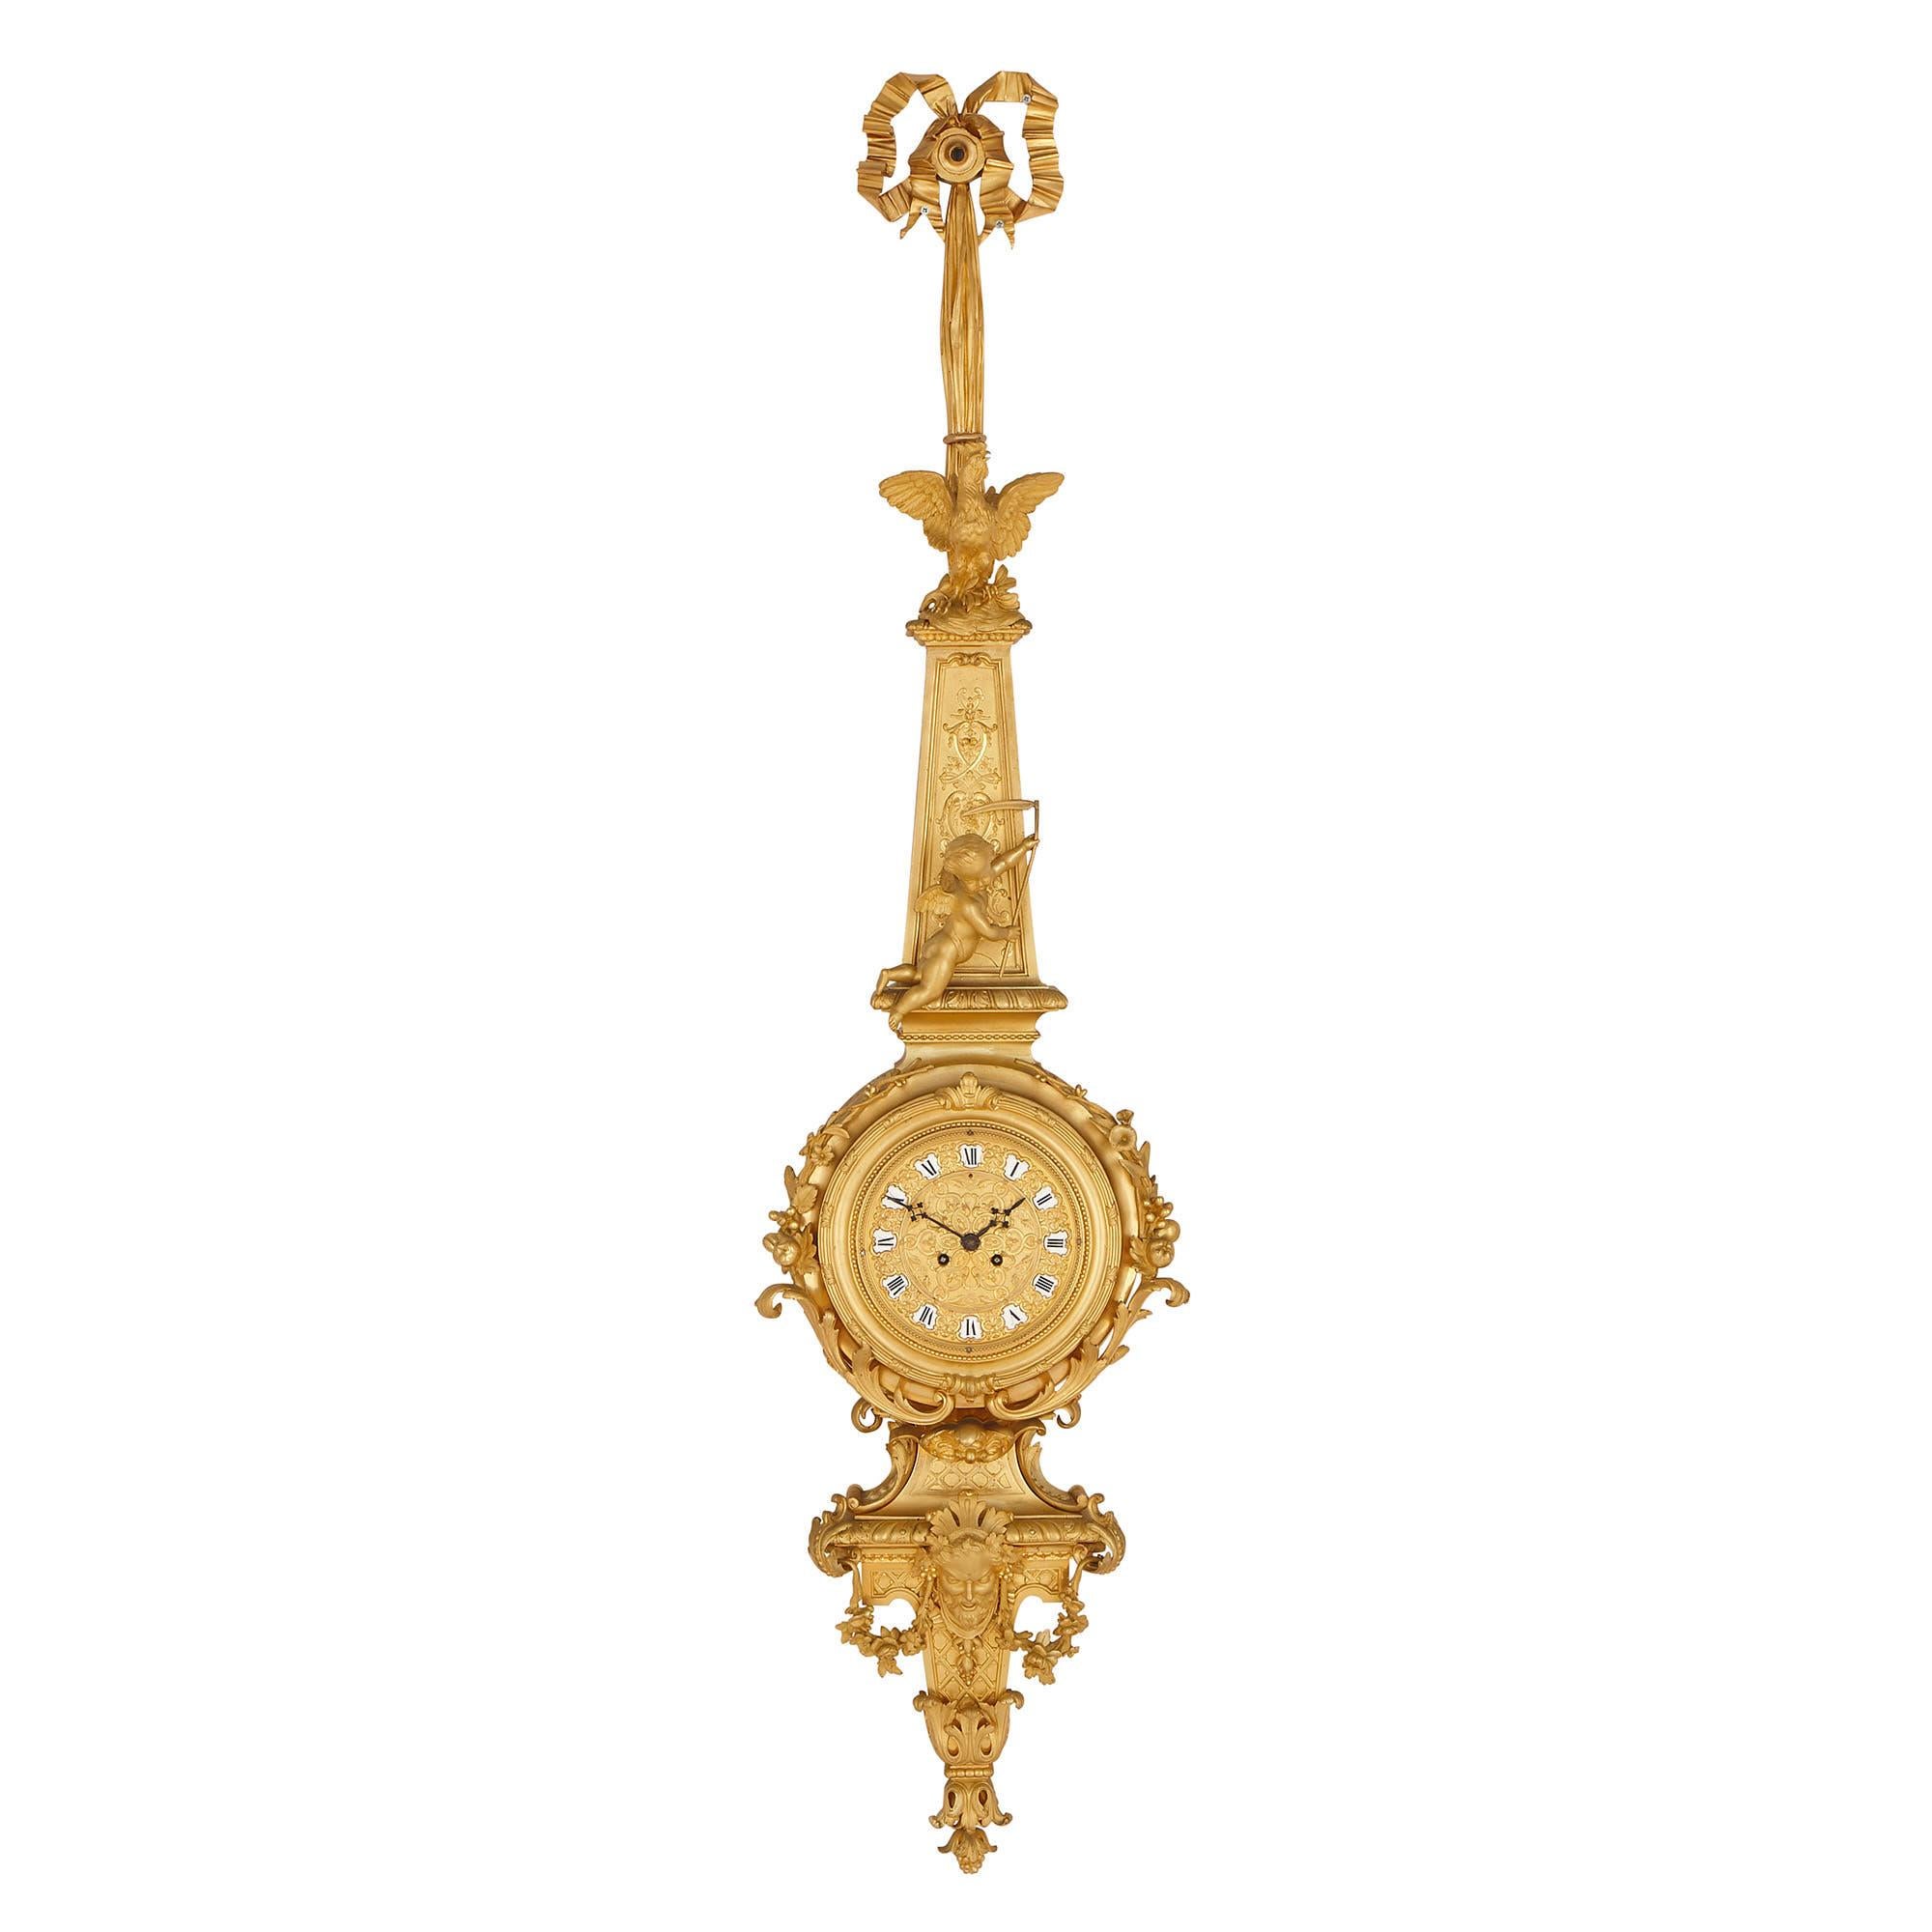 Cette étonnante paire d'horloge et de baromètre en bronze doré a été créée vers 1860 en France. Les deux ont été attribués à Raingo Frères, prestigieuse maison d'horlogerie du XIXe siècle. 

Fondée par le Belge Zacharie Joseph Raingo en 1813,